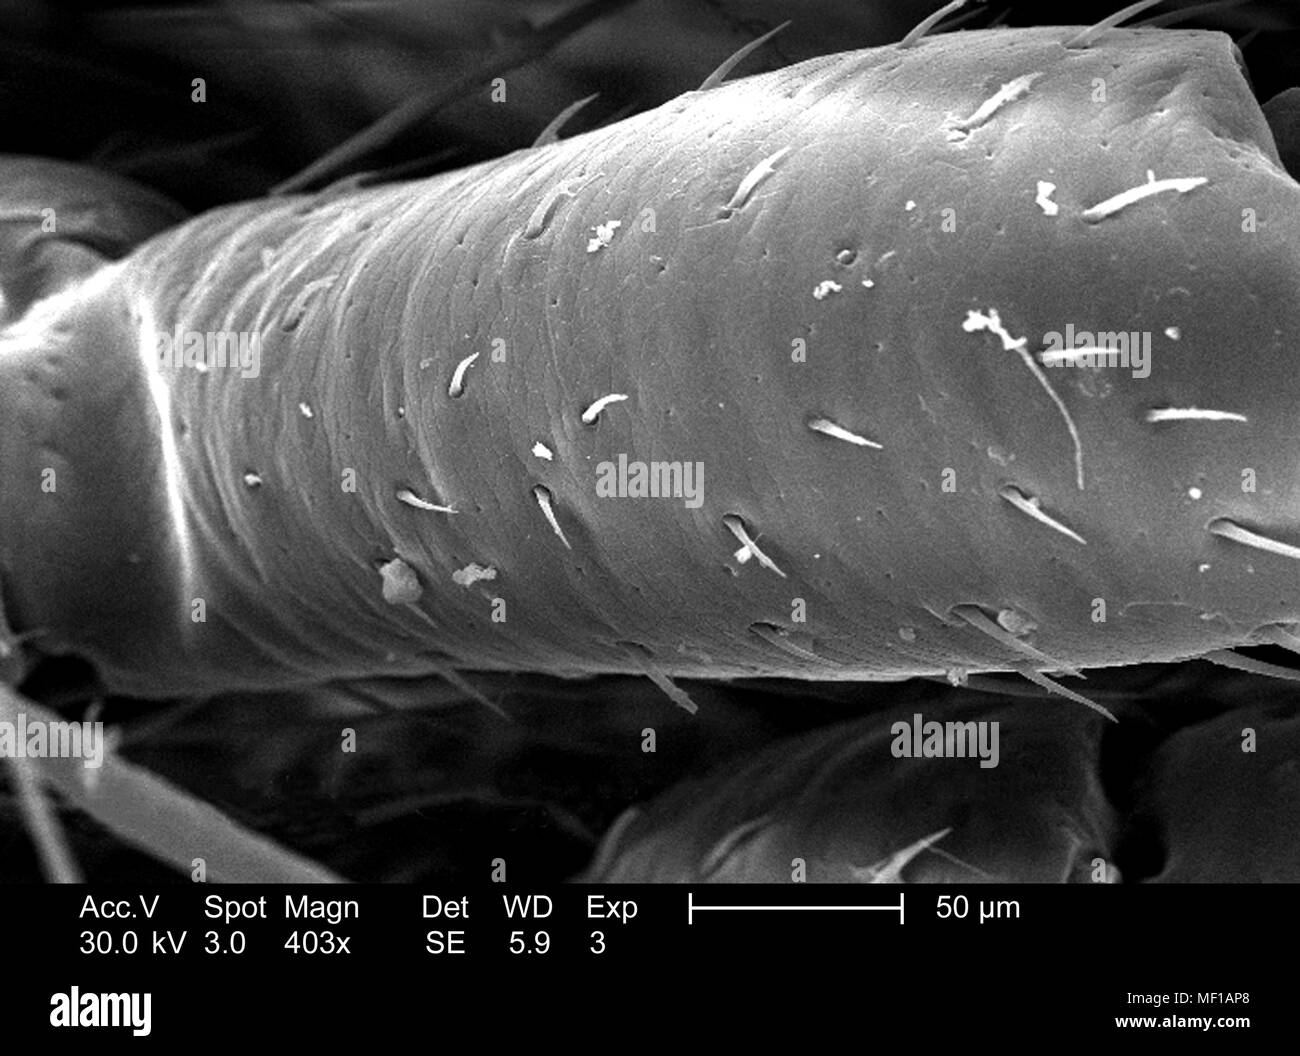 Chitinous appendicular exoskeletal cuticola di un misterioso millepiedi, raffigurato nella 403x di scansione ingrandita al microscopio elettronico (SEM) immagine, 2005. Immagine cortesia di centri per il controllo delle malattie (CDC) / Janice Haney Carr, Oren Mayer. () Foto Stock